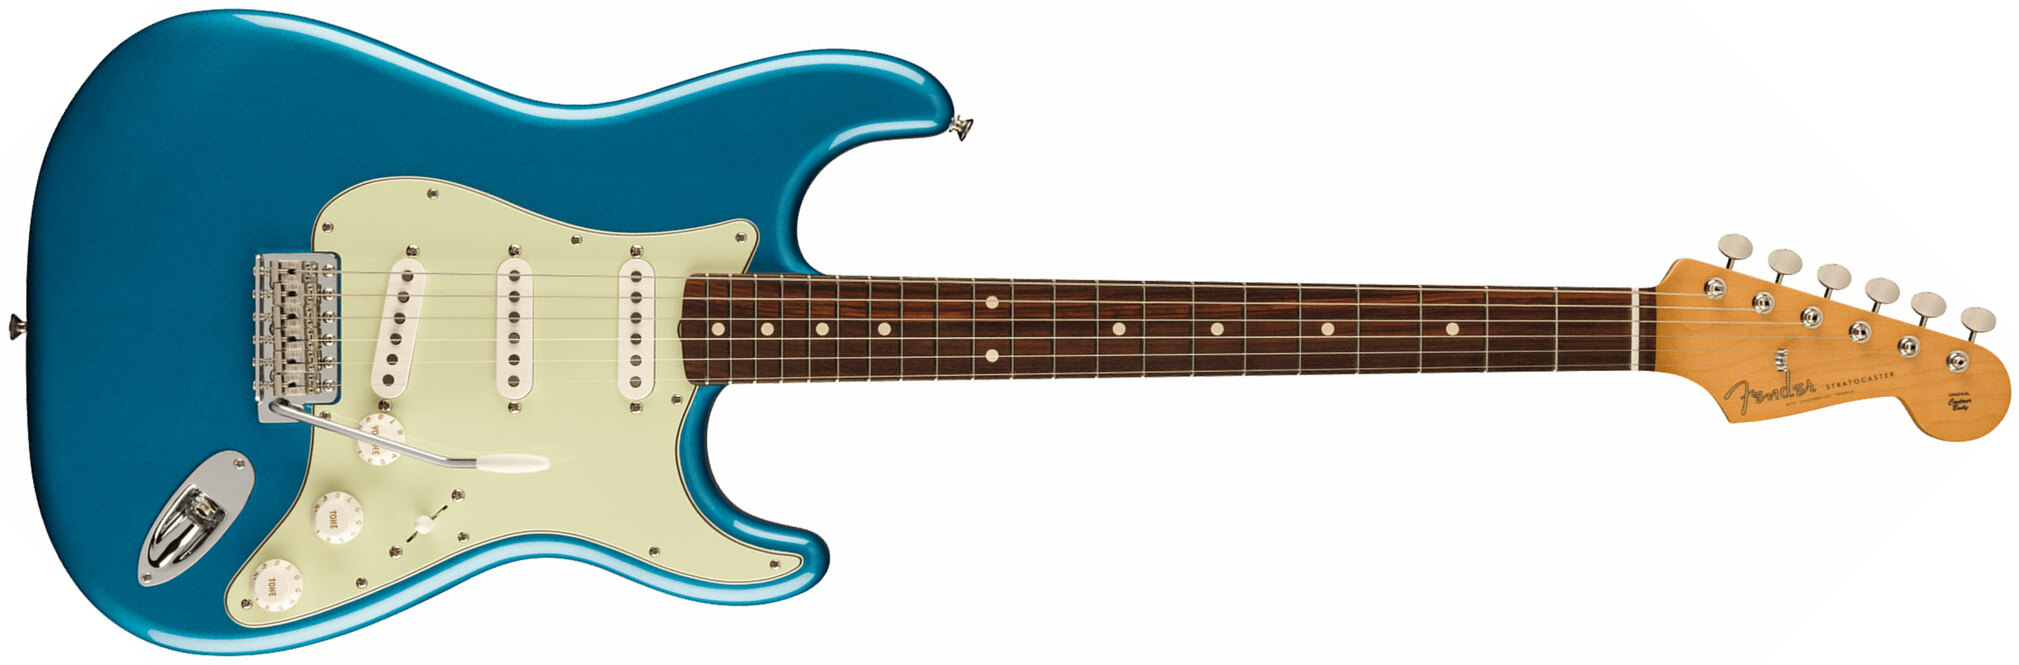 Fender Strat 60s Vintera 2 Mex 3s Trem Rw - Lake Placid Blue - Guitare Électrique Forme Str - Main picture